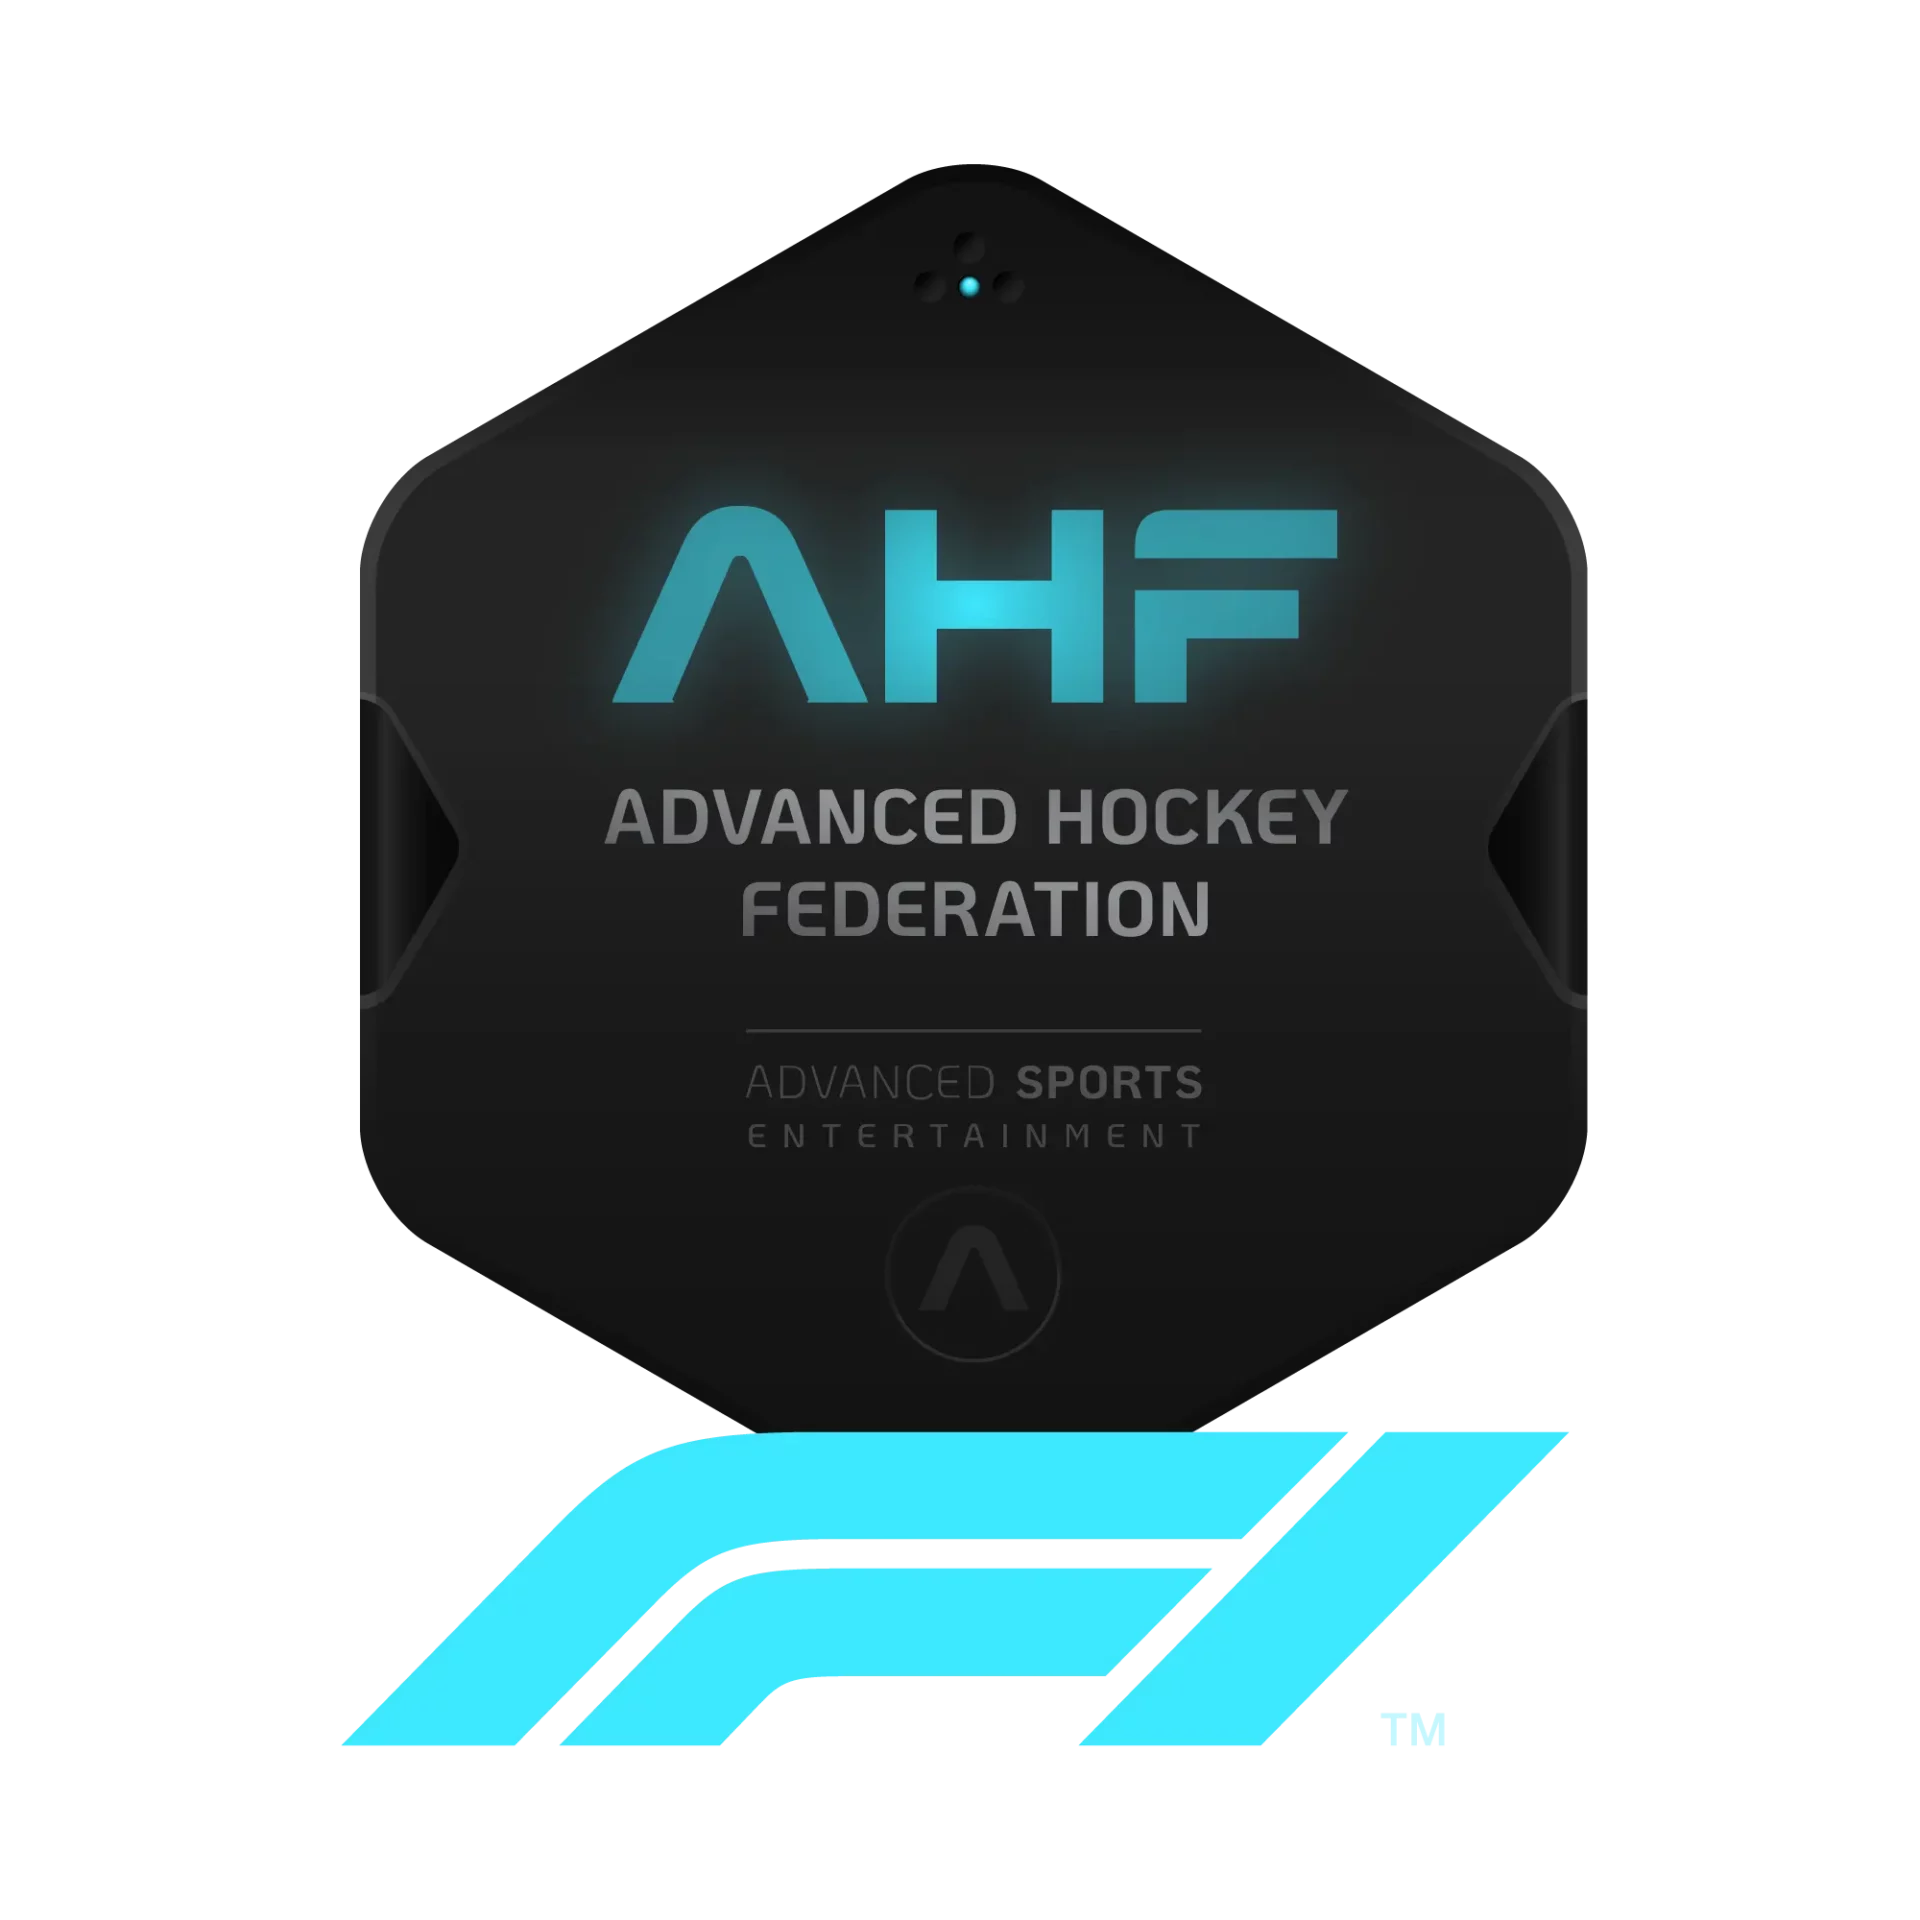 F1-AHF-HOCKEY-Advanced-Hockey-Federation